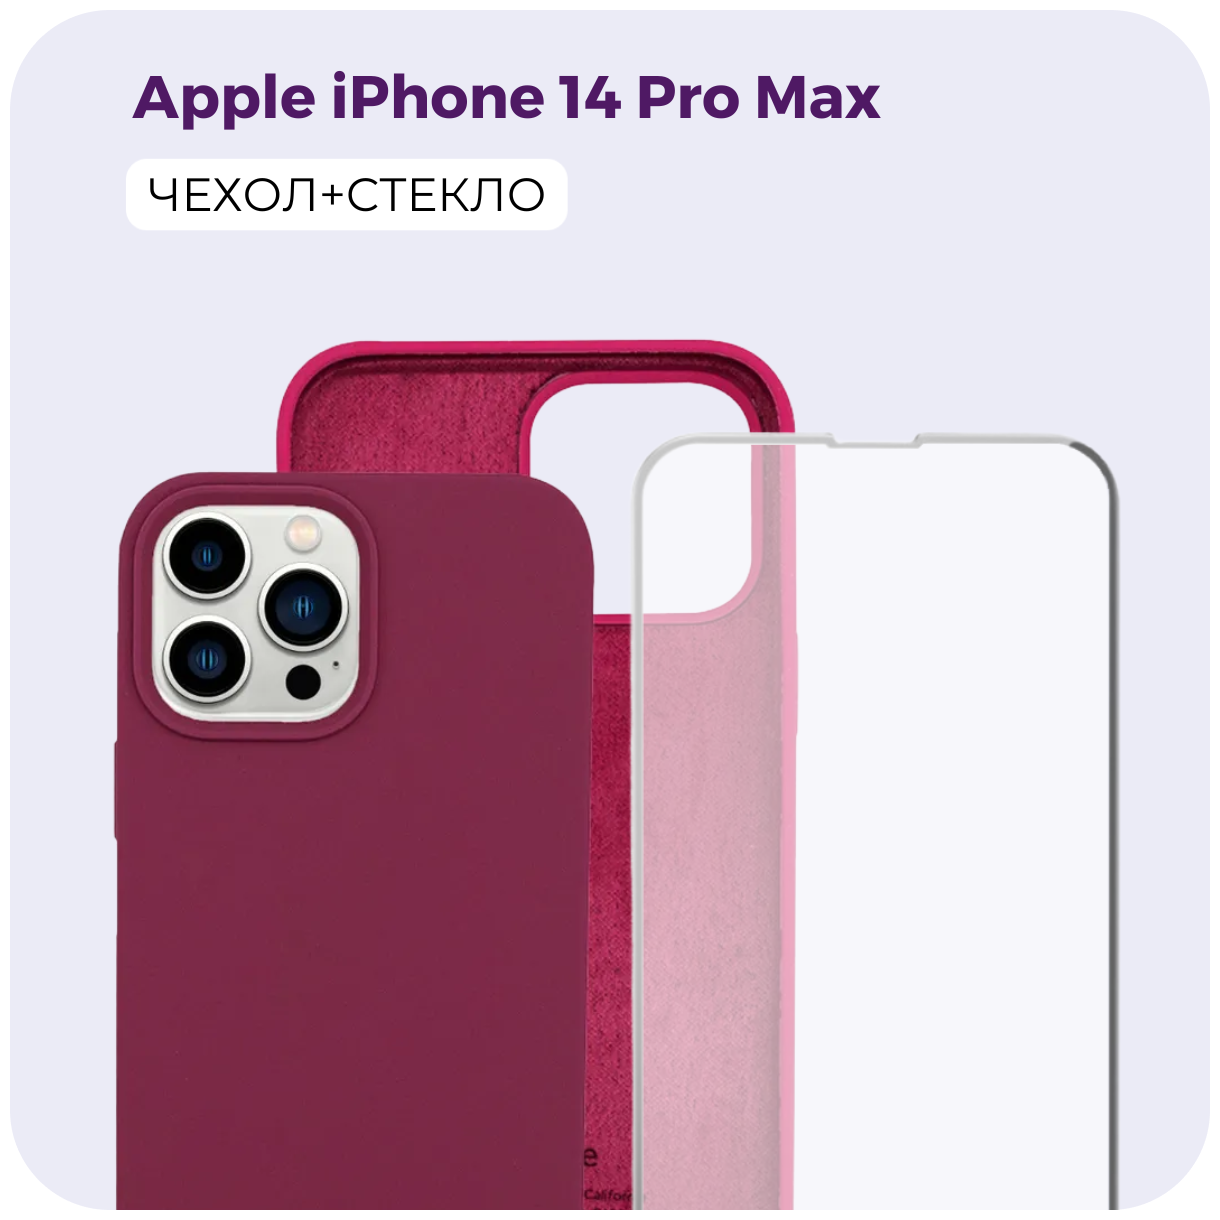 Комплект 2 в 1: Защитный матовый чехол (бампер) Silicone Case + защитное стекло для Apple iPhone 14 Pro Max (Эпл Айфон 14 Про Макс). /№67